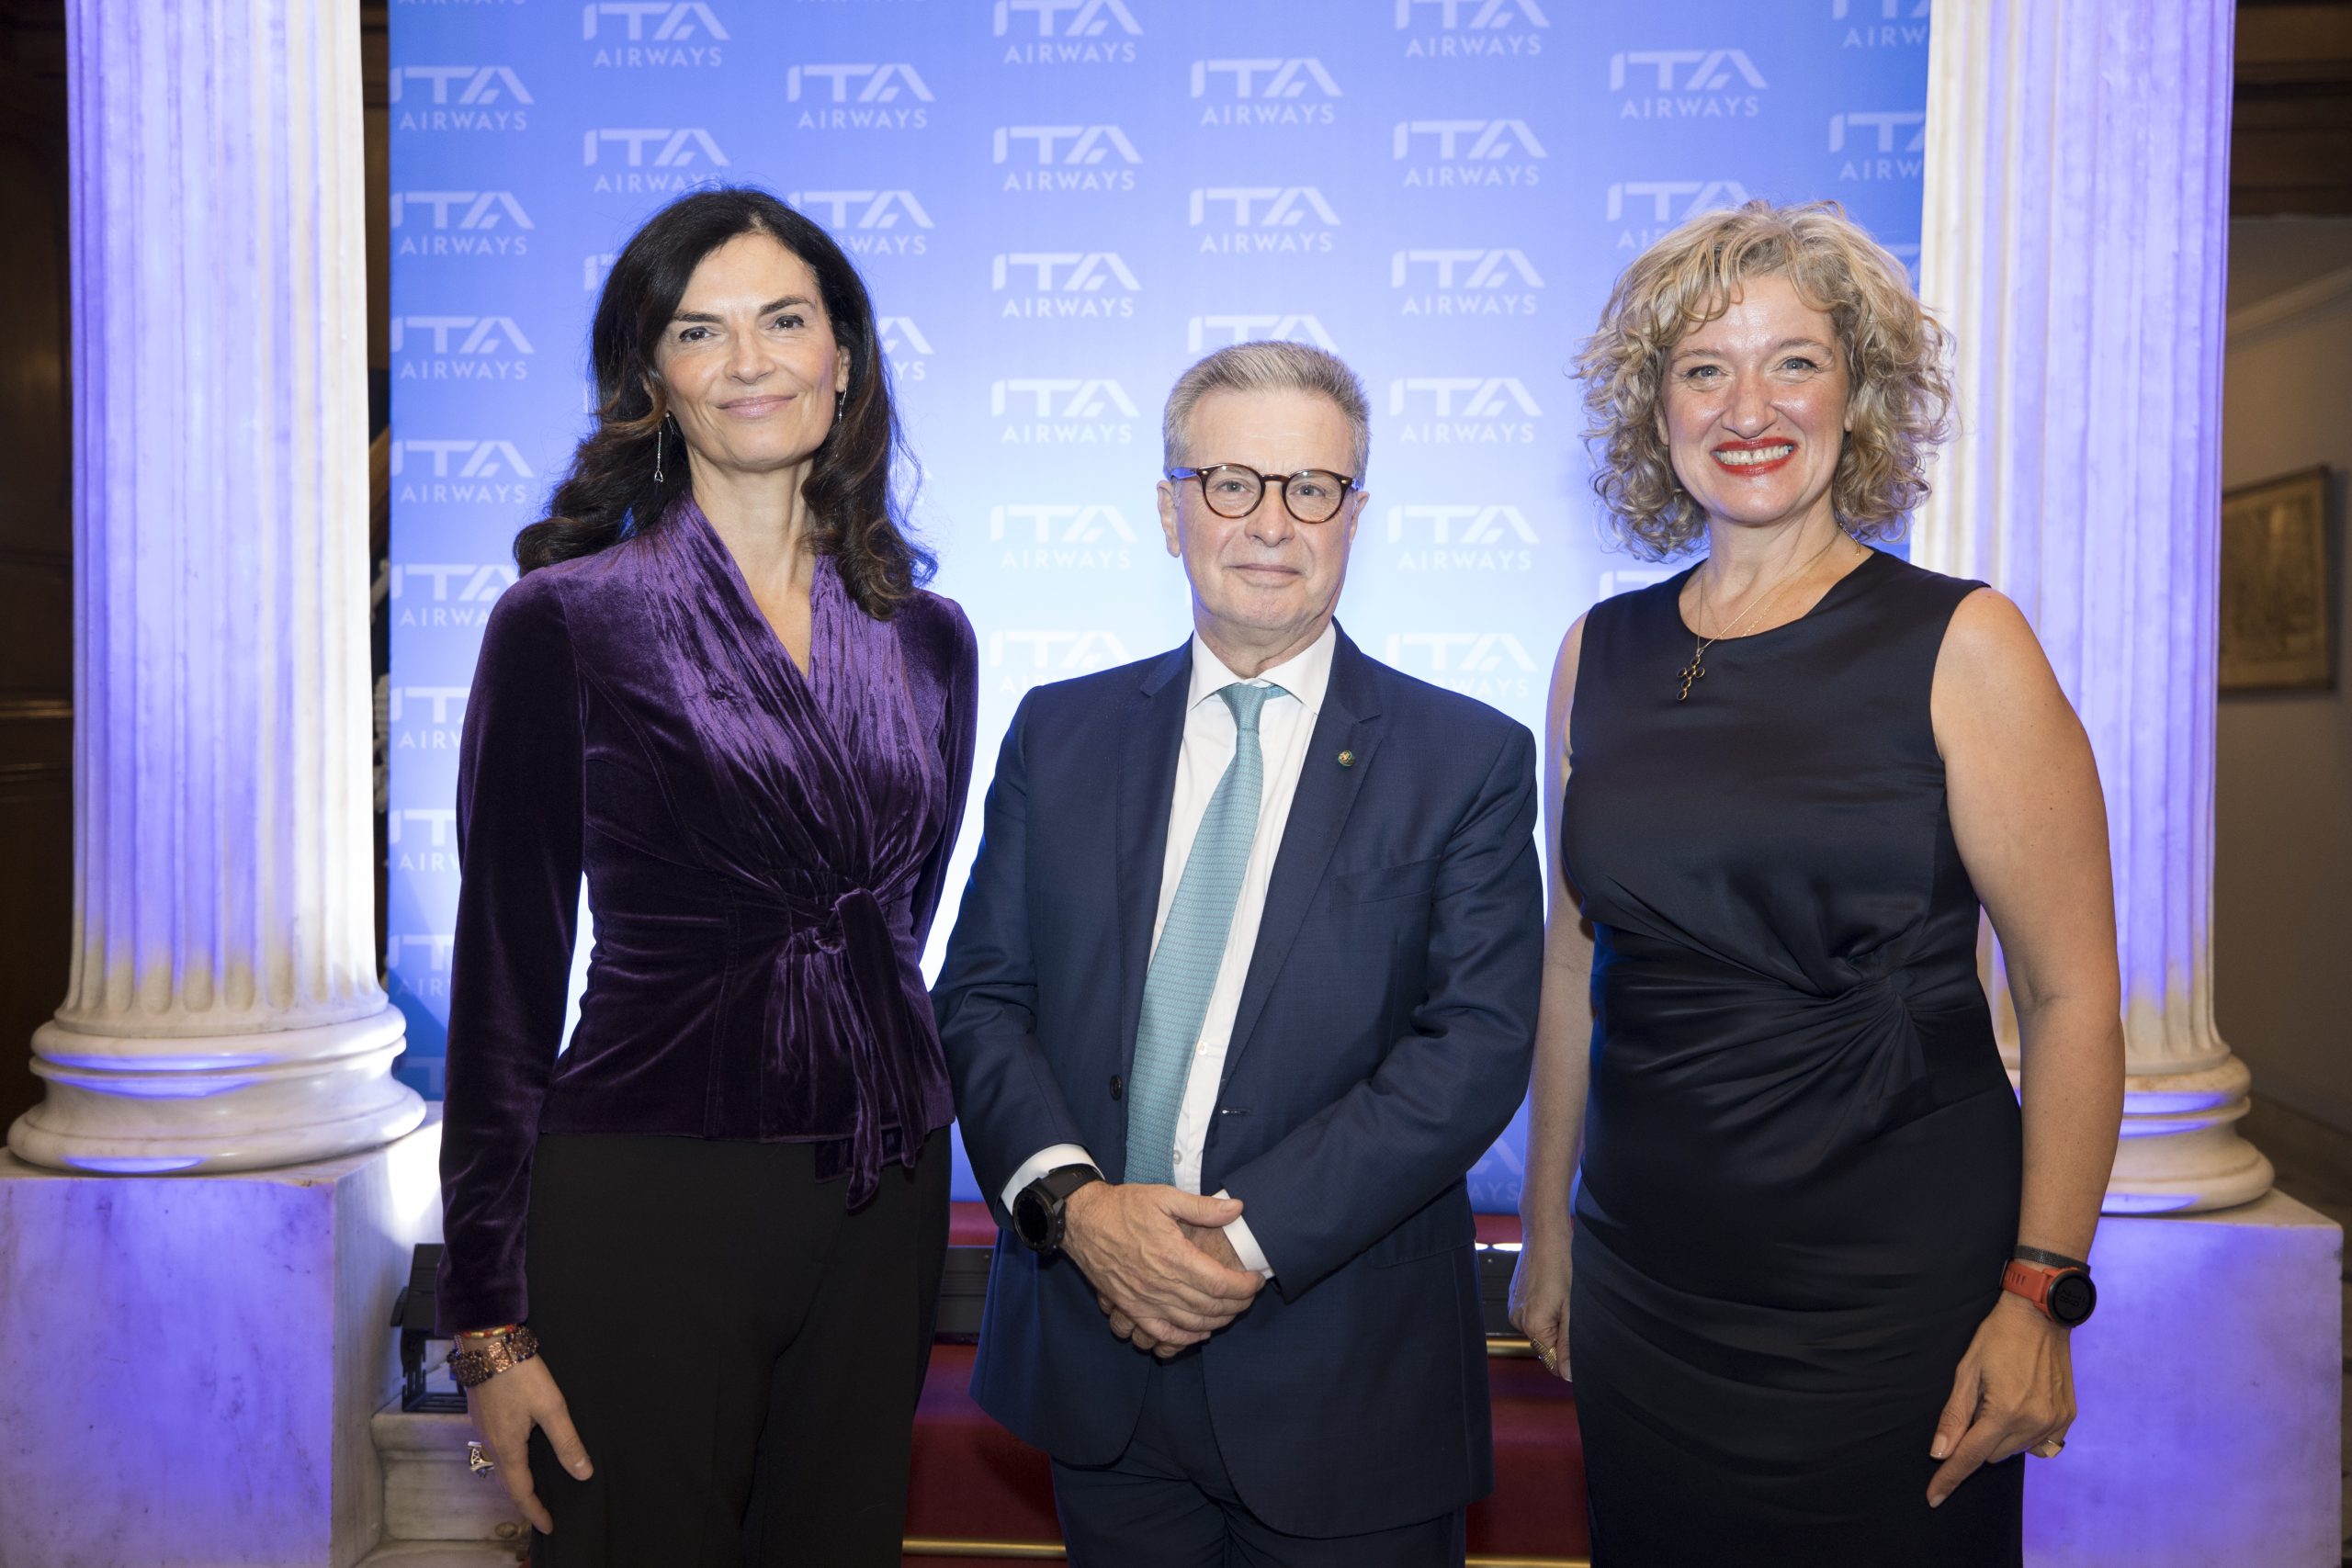 Εκδήλωση της ITA Airways στην Ιταλική Πρεσβεία στην Αθήνα στις 14 Δεκεμβρίου 2022